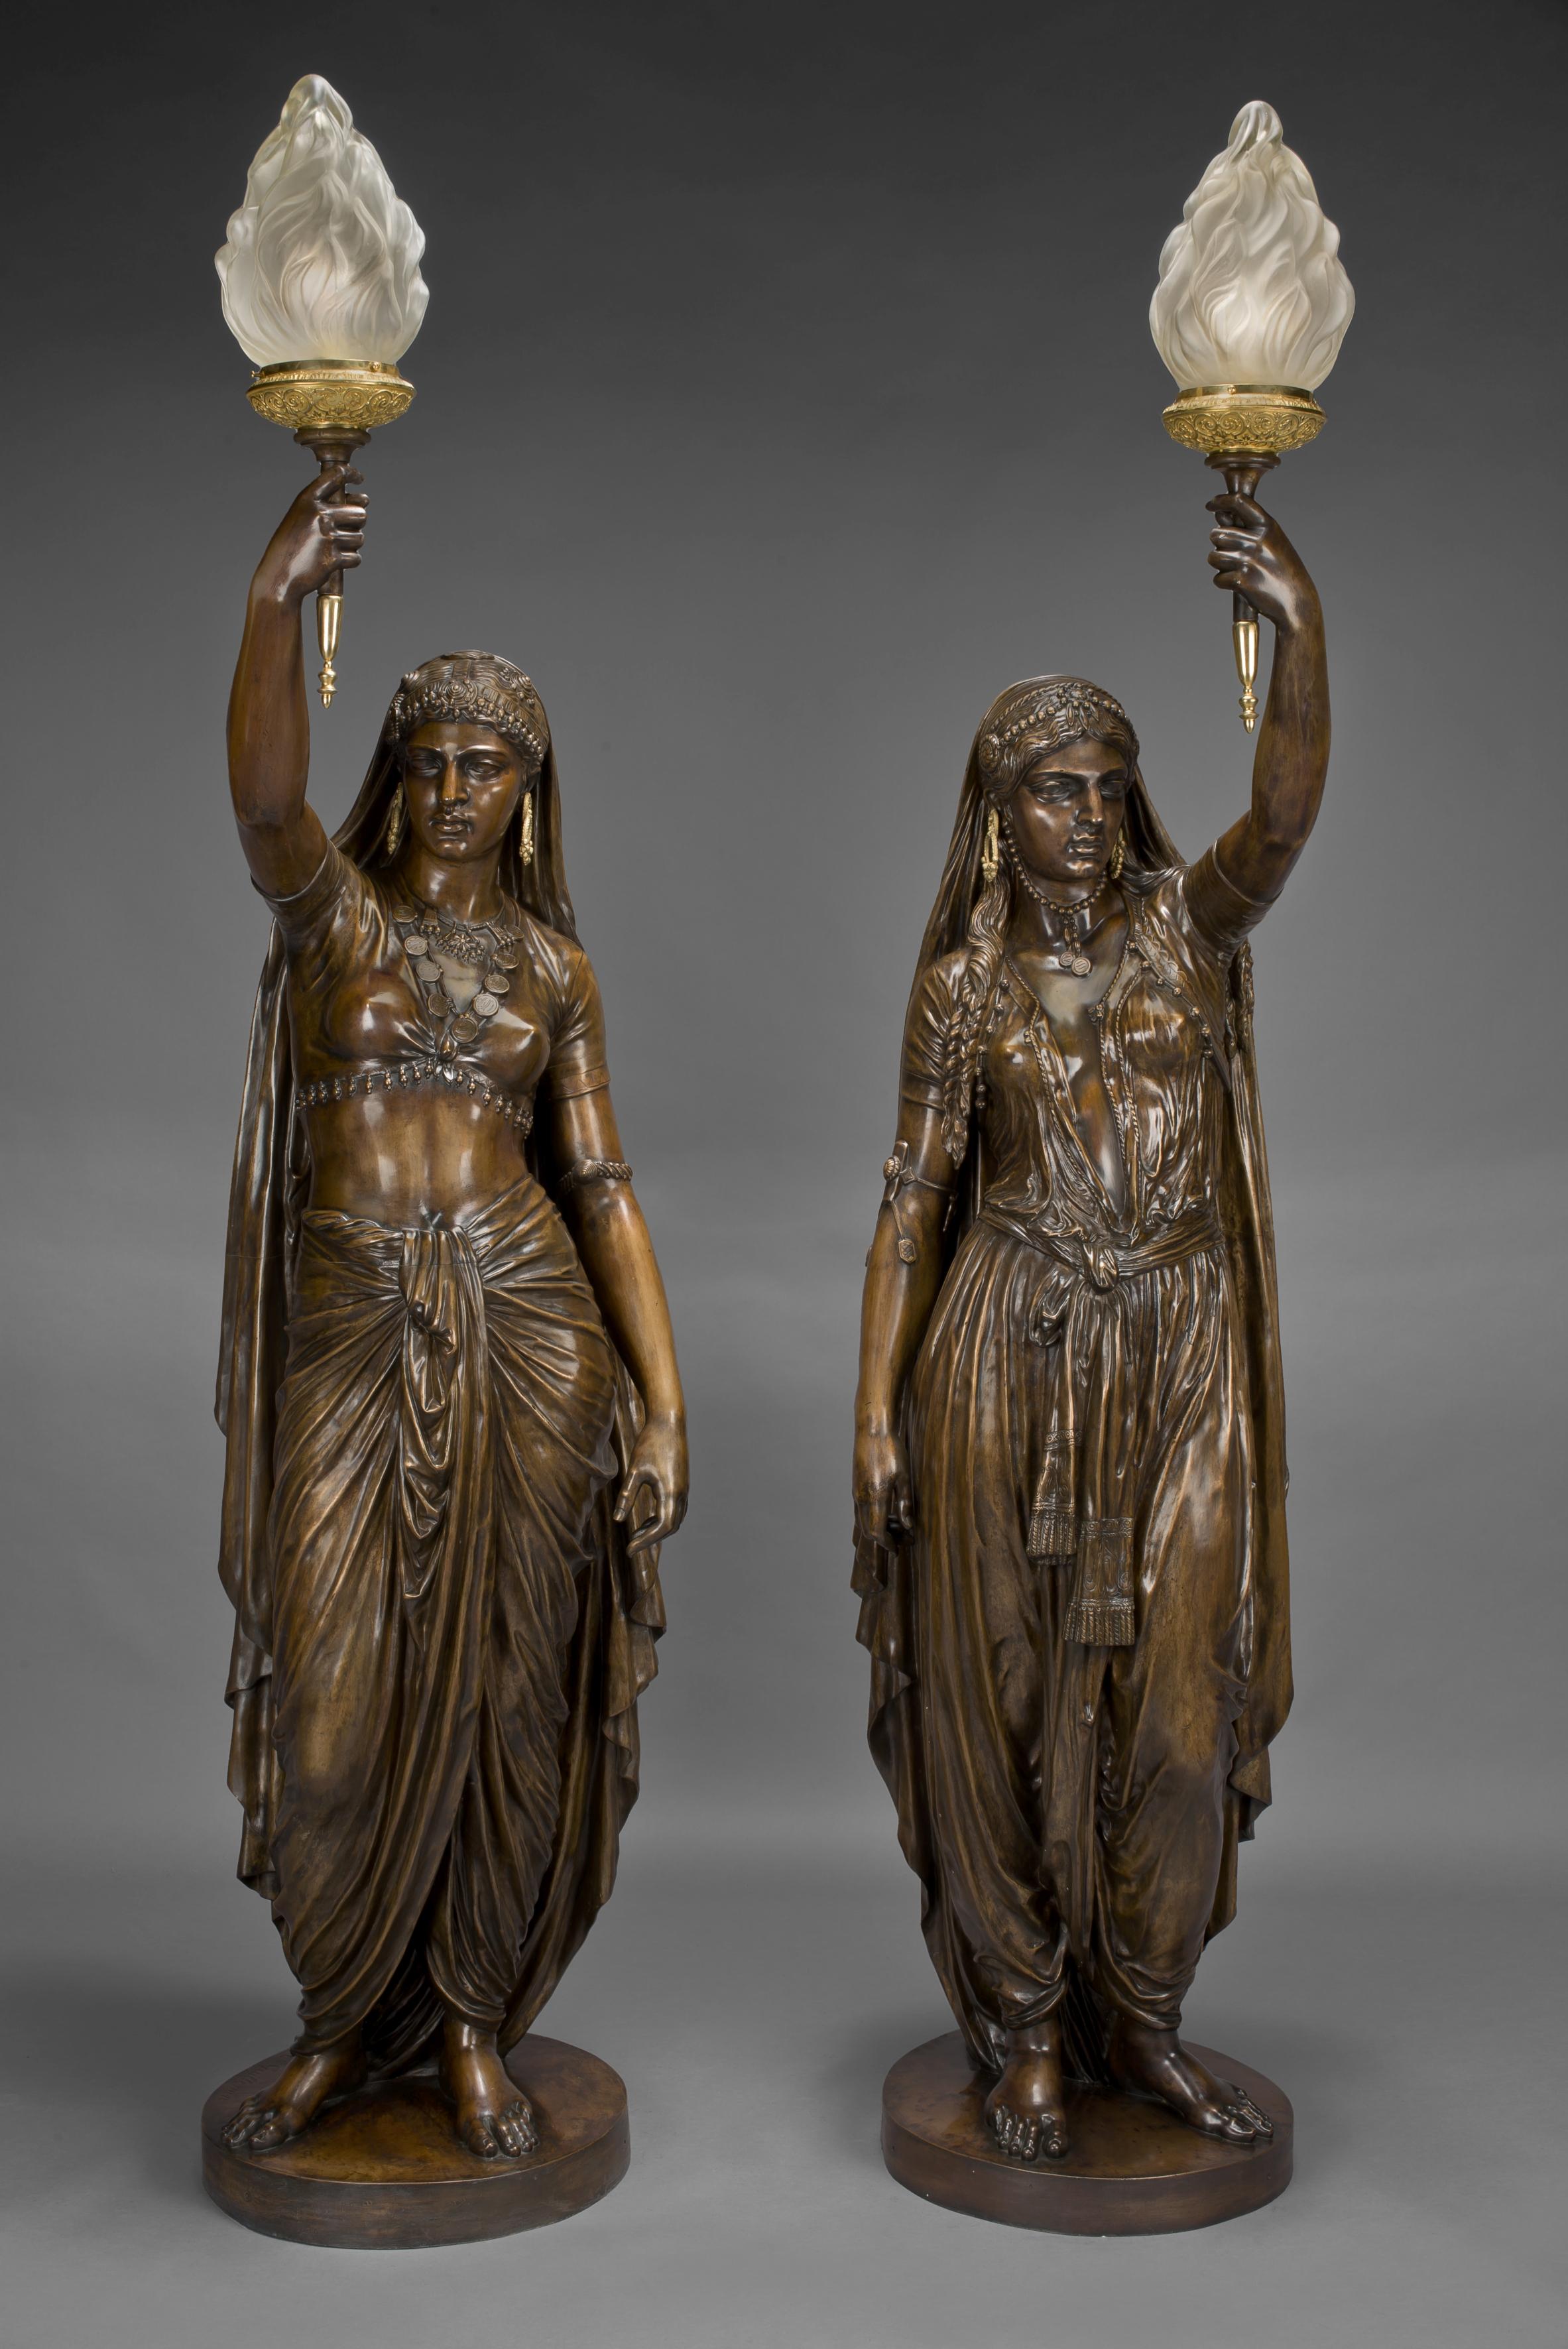 Ein sehr bedeutendes Paar großer patinierter Bronzefackeln von Émile Guillemin, gegossen von Ferdinand Barbedienne.

Französisch, datiert 1872.

Barbedienne Titel: 